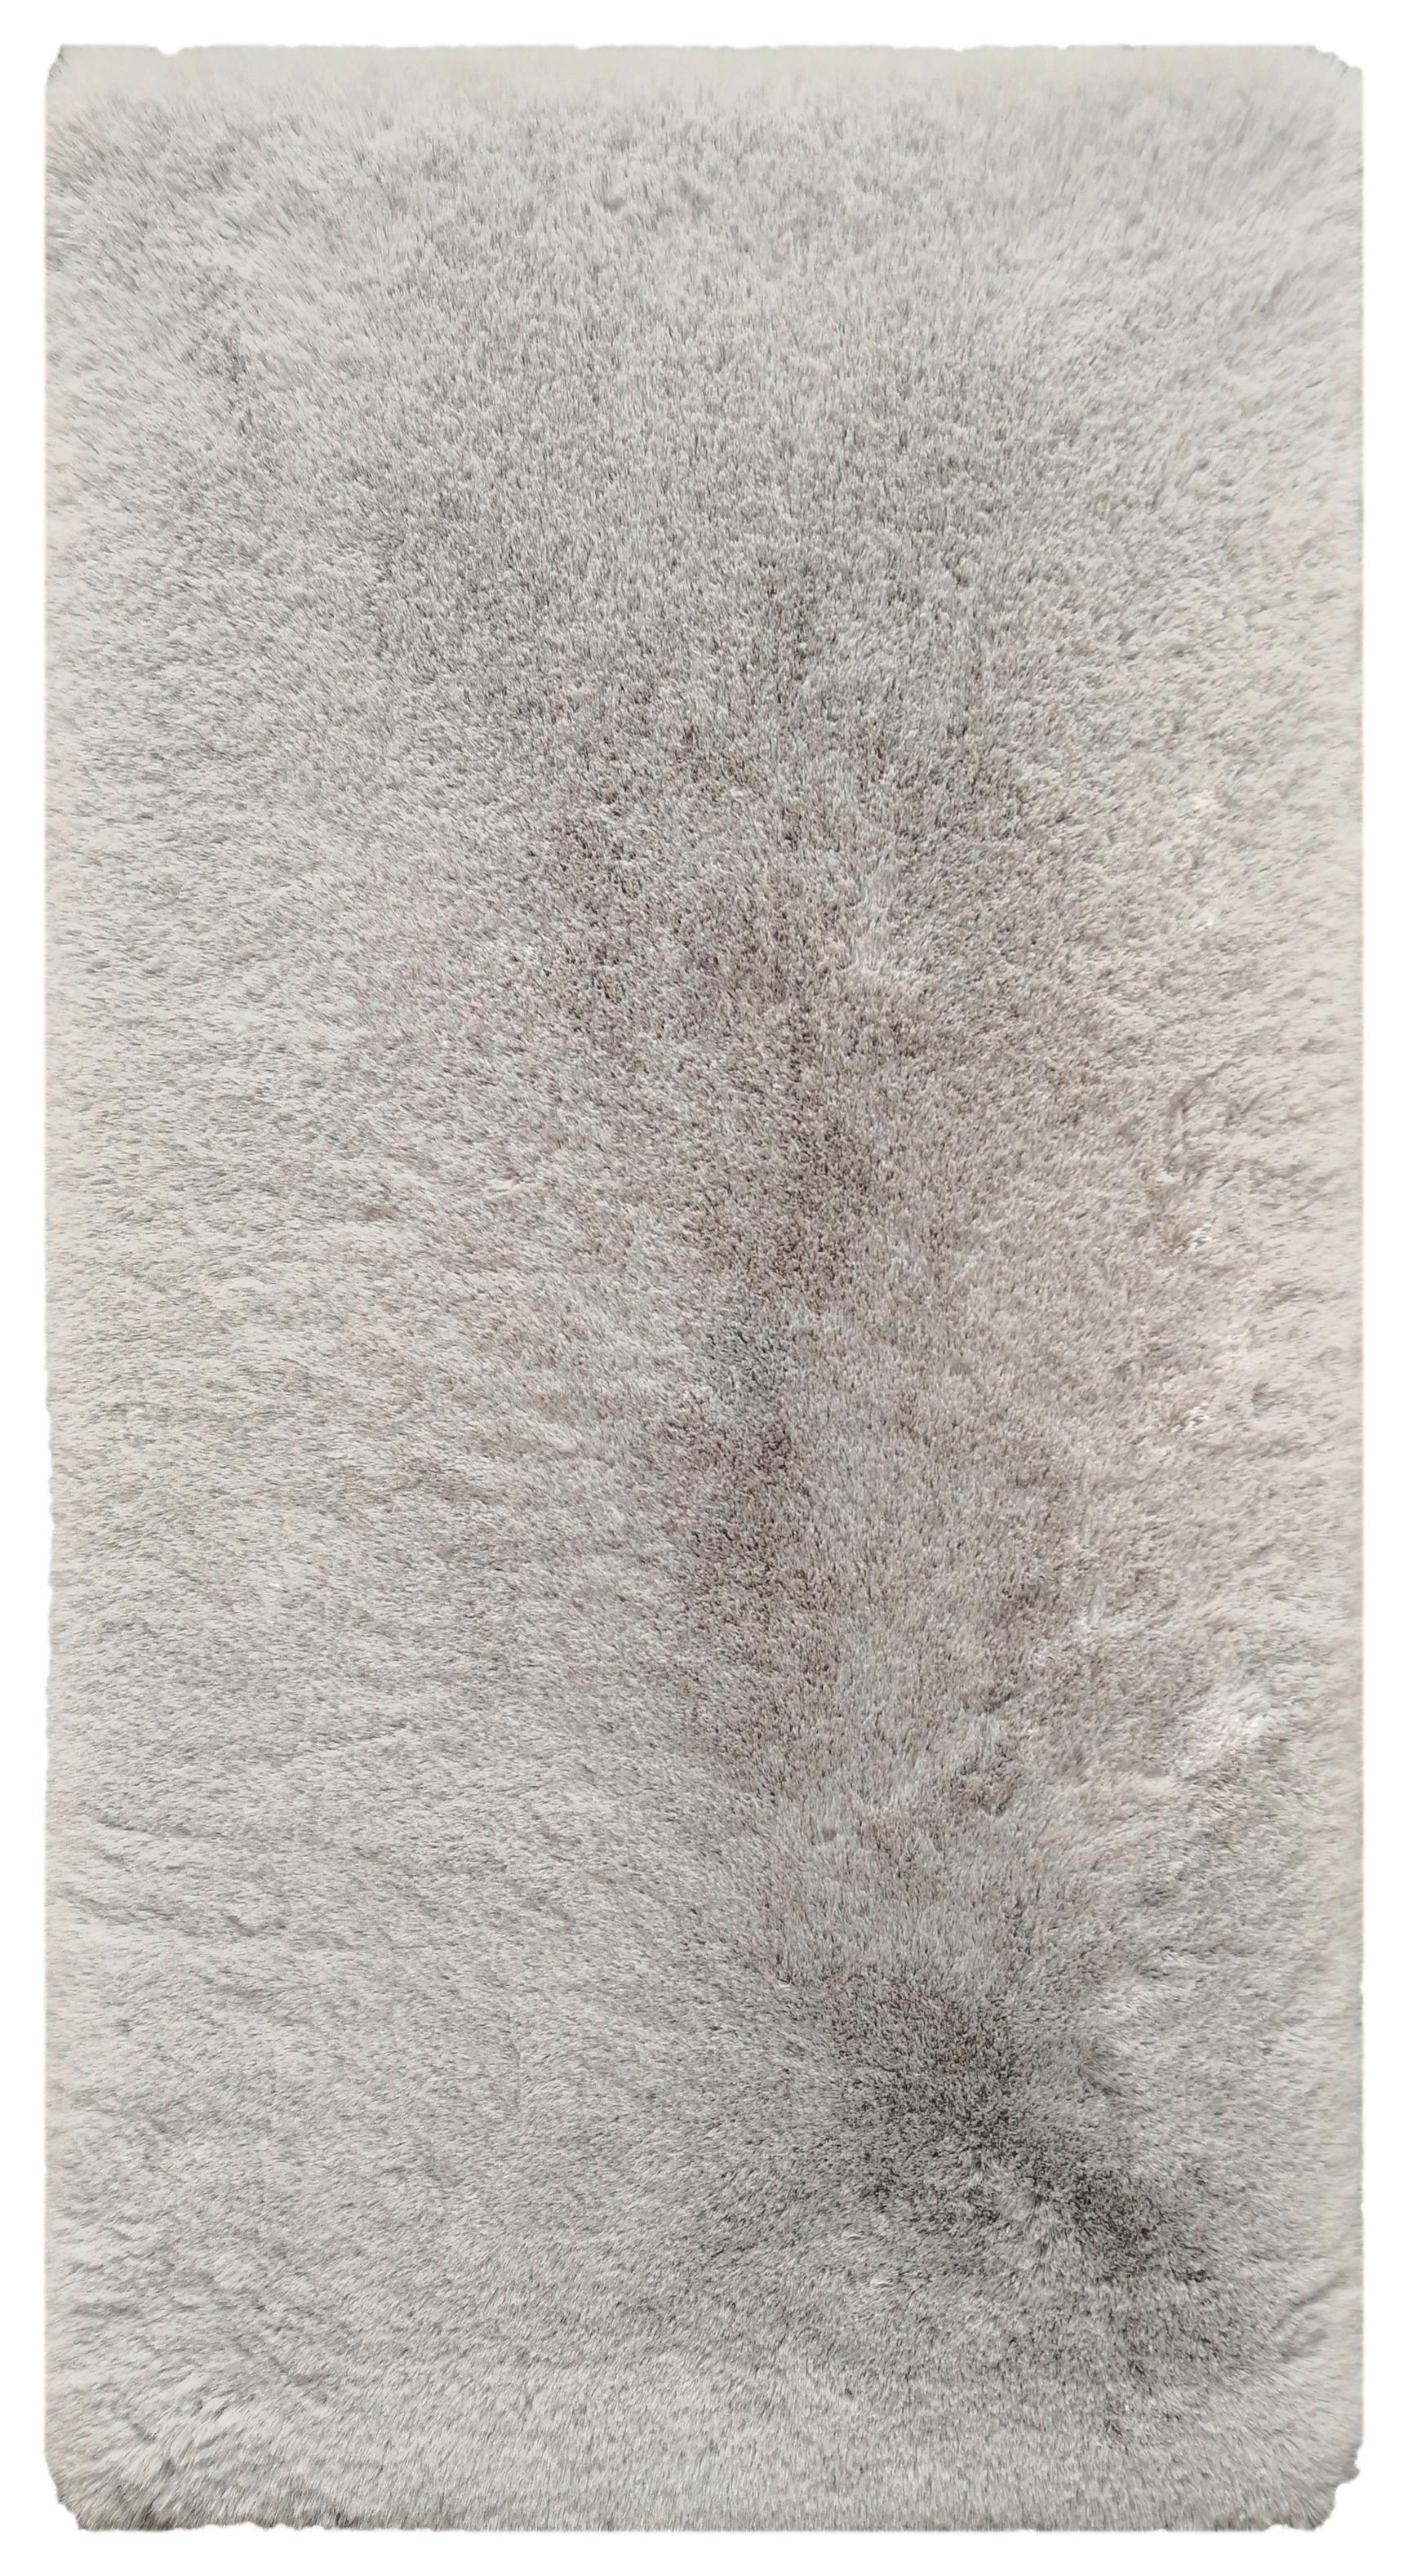 Umjetno Krzno Caroline 1 -Akt- - srebrne boje, tekstil (80/150cm) - Modern Living